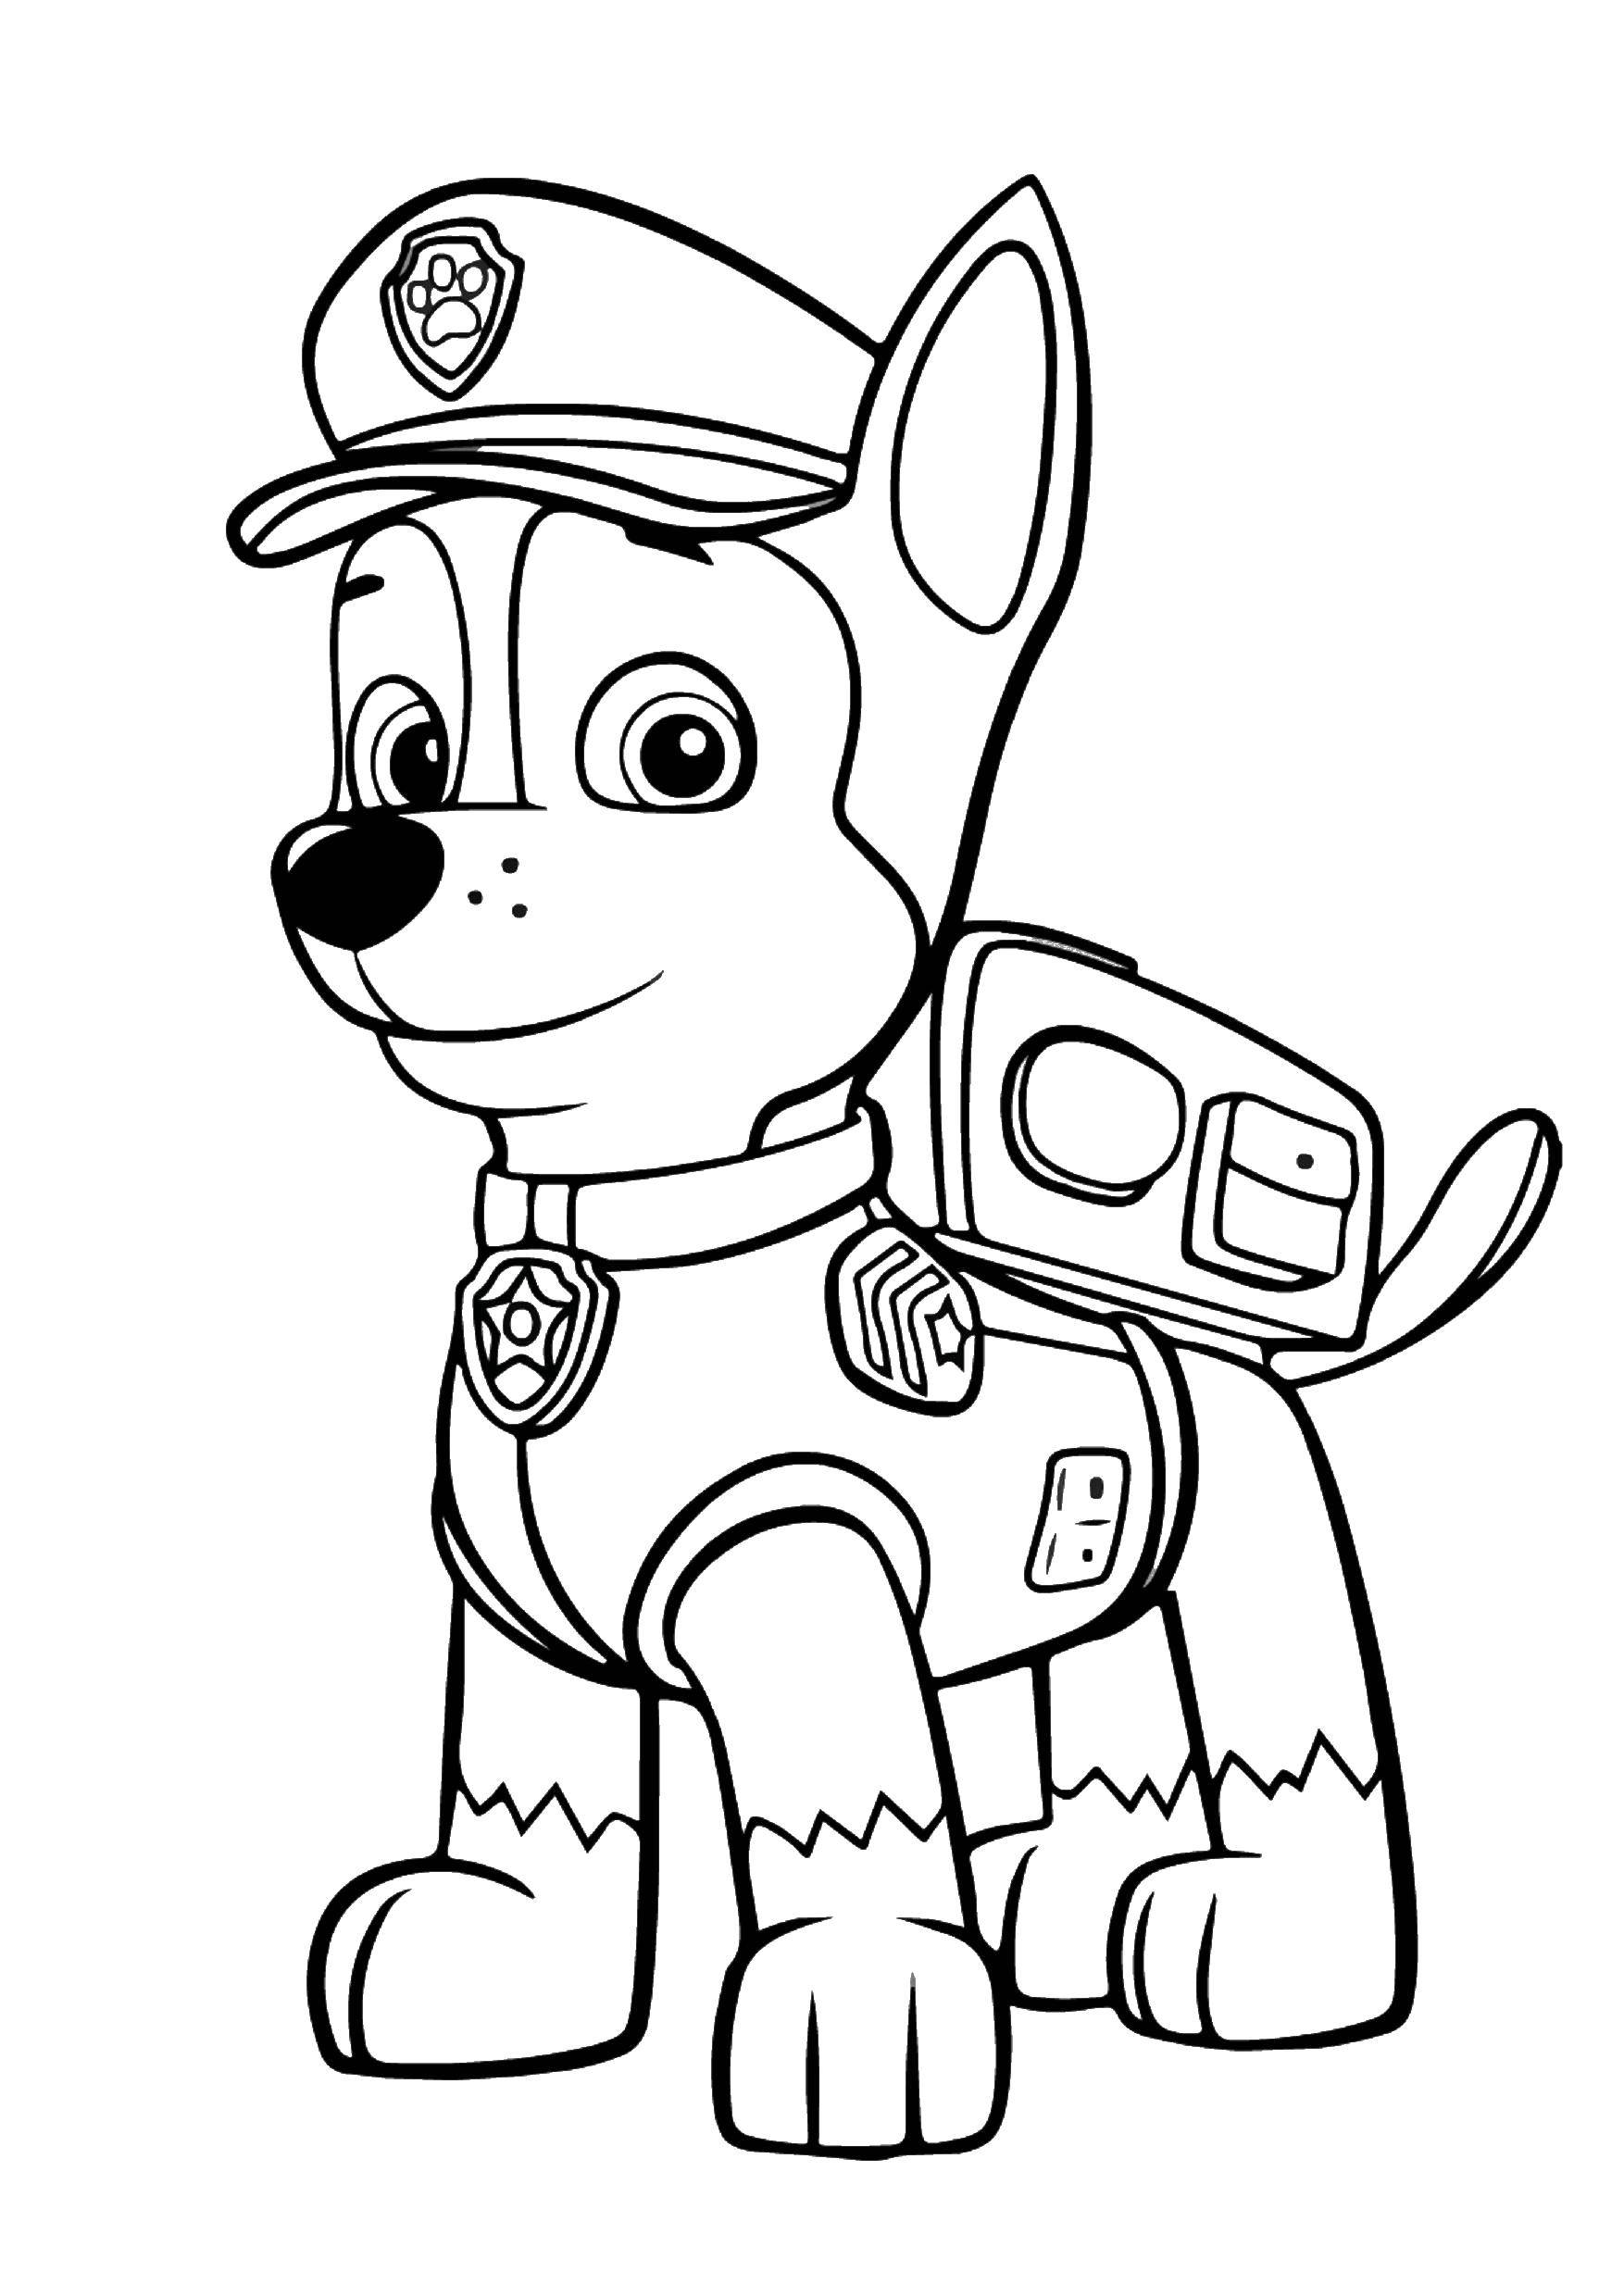 Название: Раскраска Чейз. Категория: щенячий патруль. Теги: Щенячий патруль.